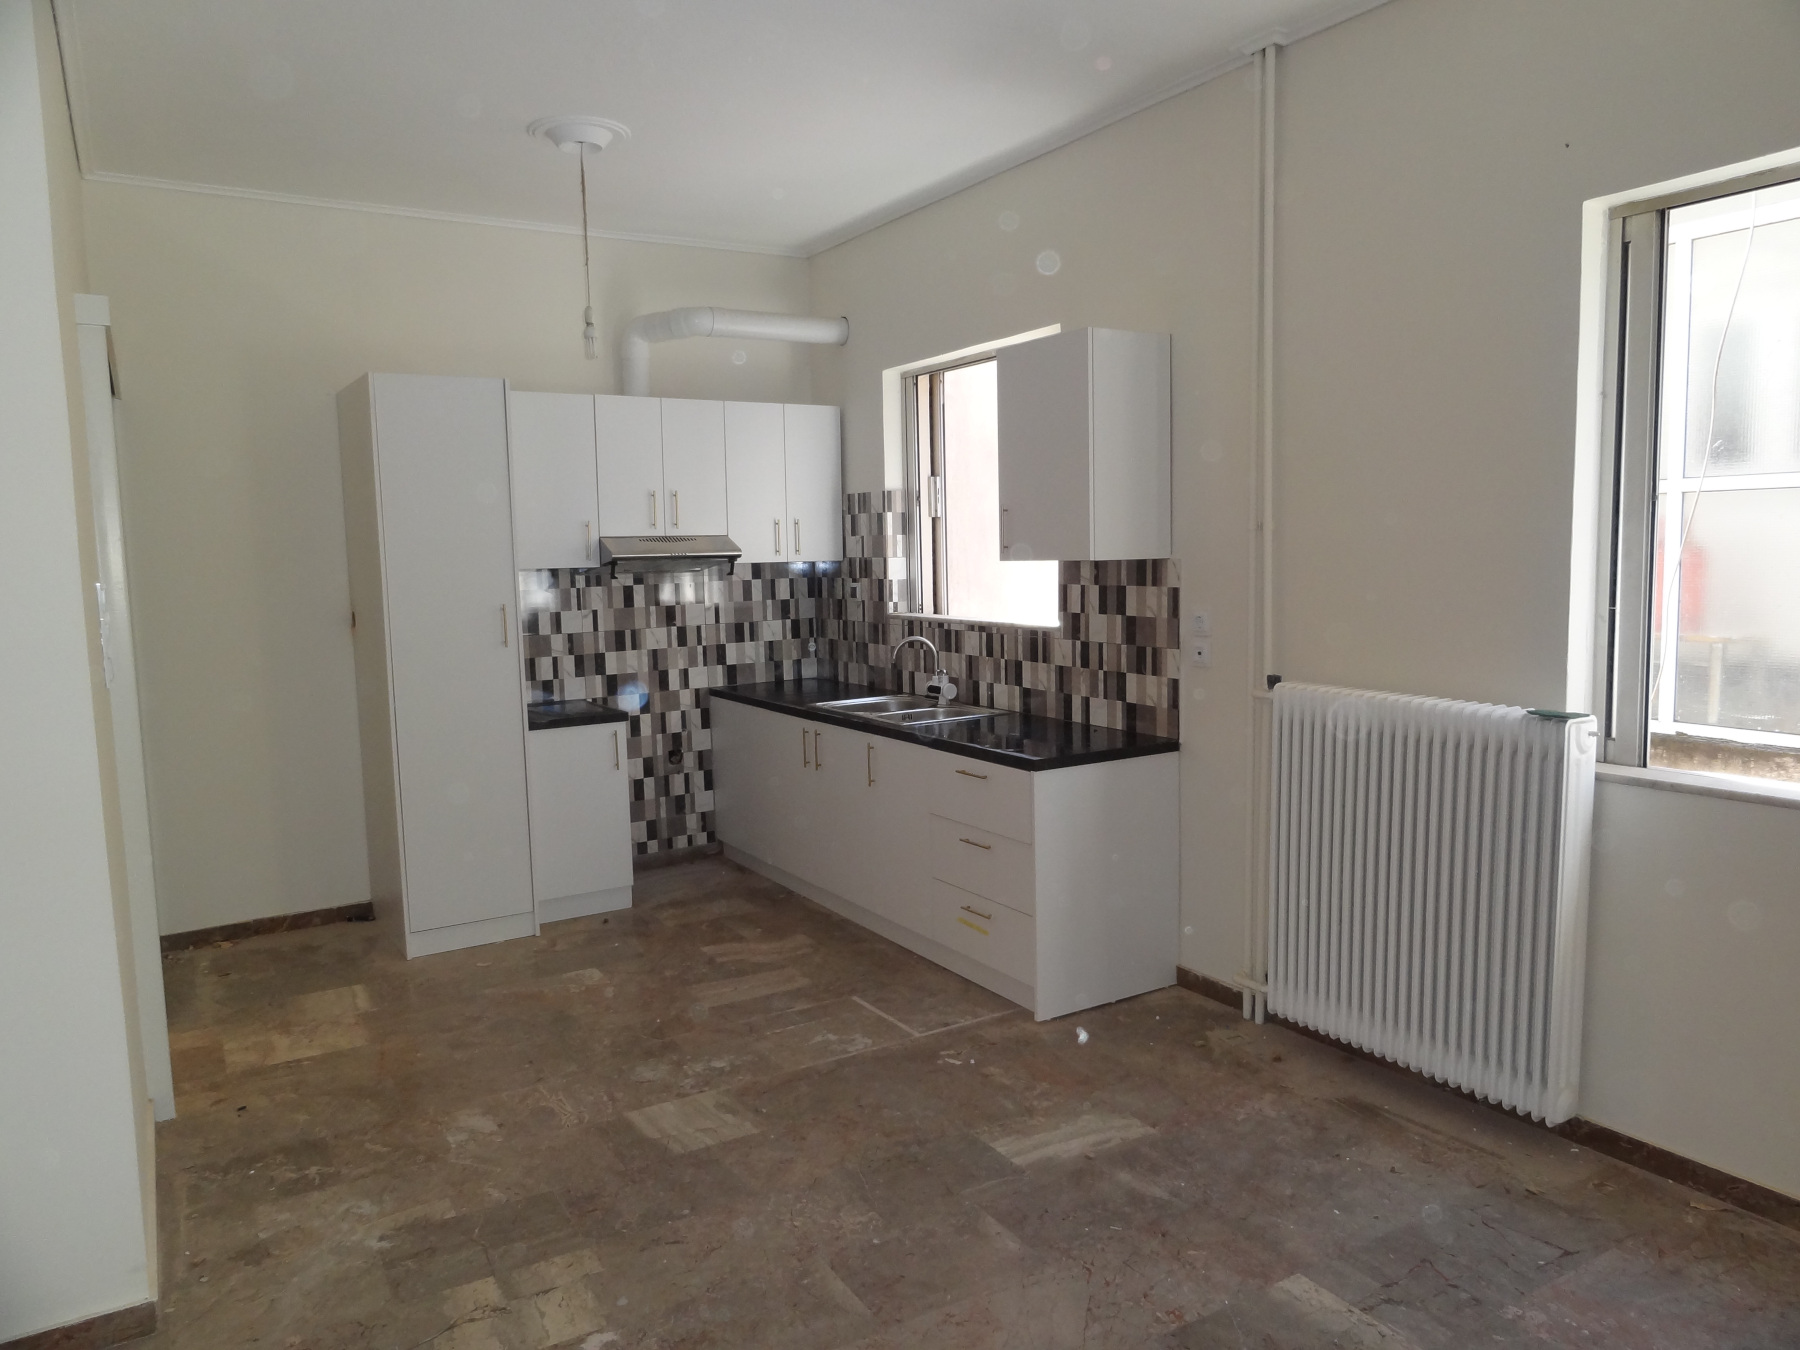 2 bedrooms apartment for rent, 72 sq.m. 2nd floor in the area of Karavatia in Ioannina